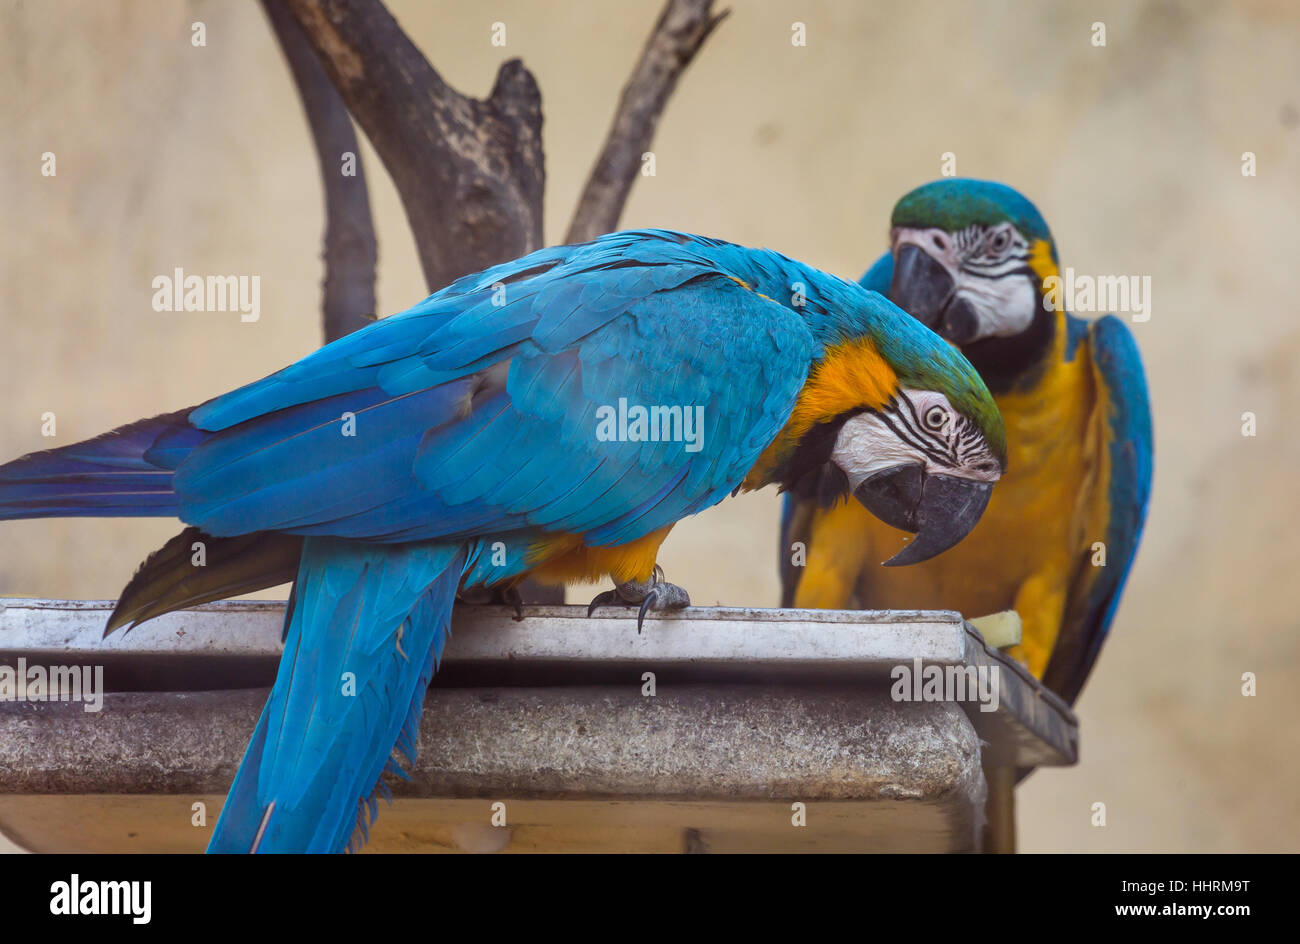 Les oiseaux de l'ara bleu jaune en train de manger des fruits à un sanctuaire d'oiseaux de l'Inde. Banque D'Images